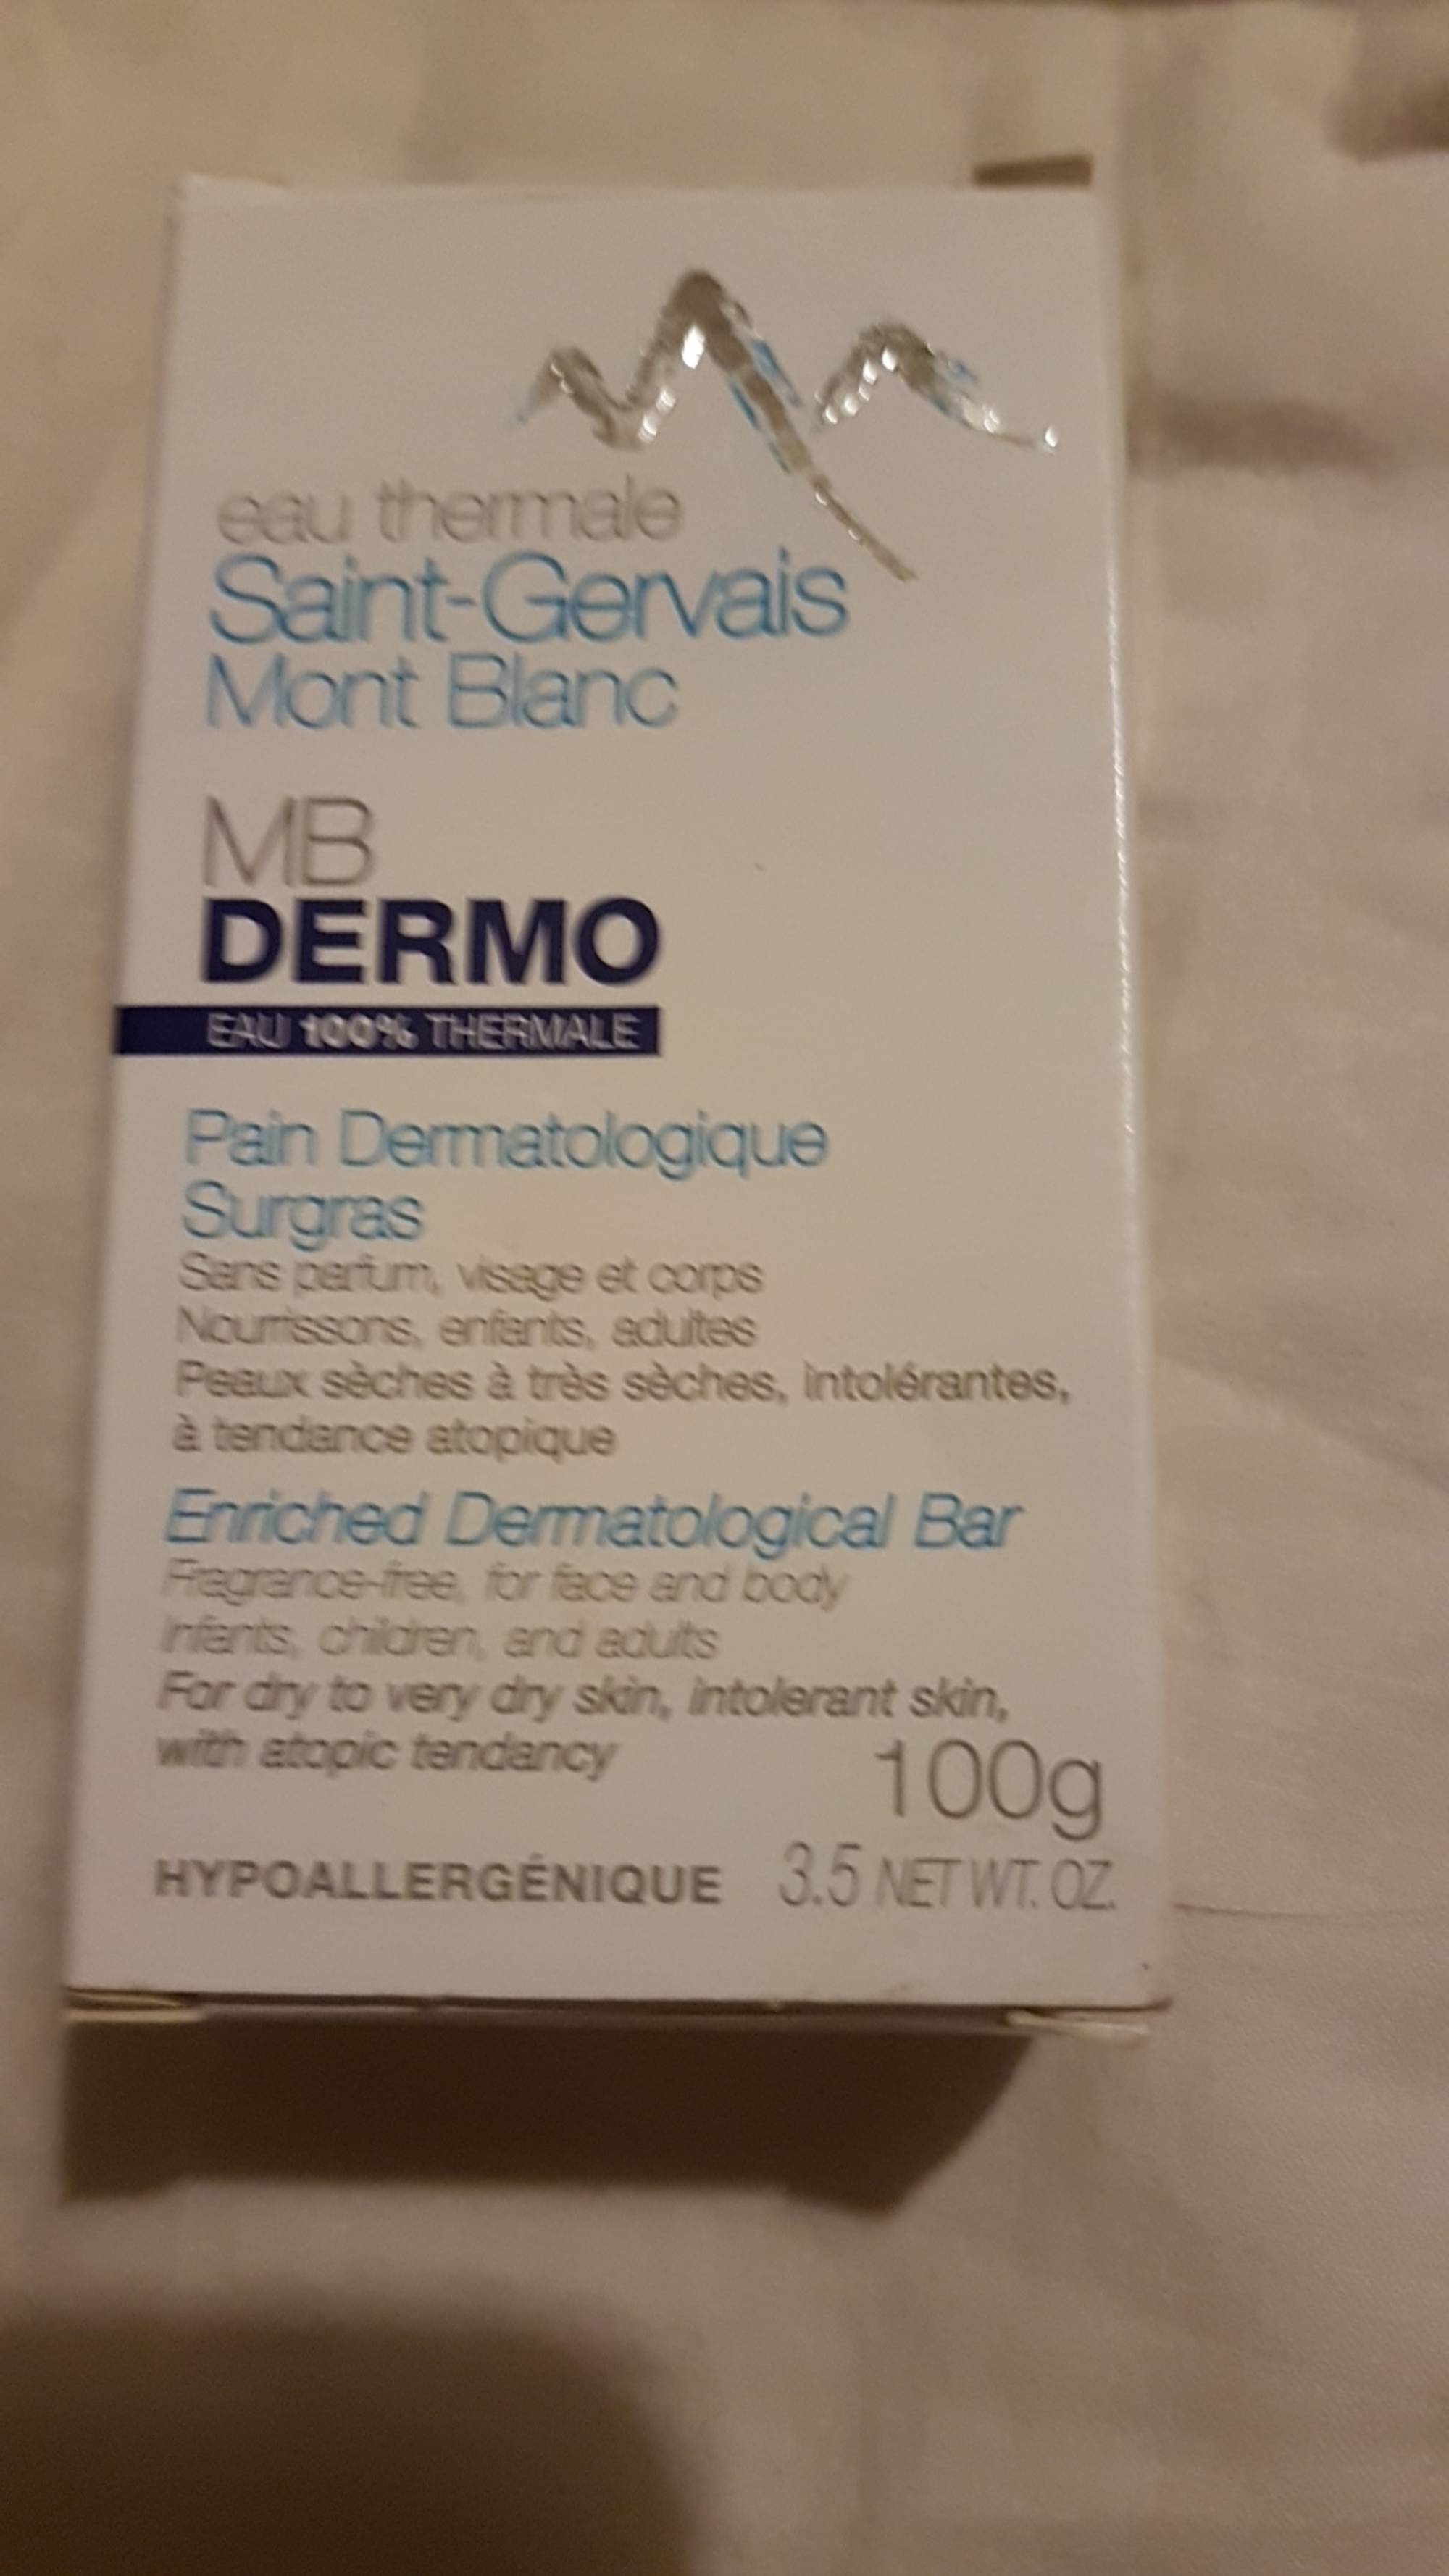 SAINT-GERVAIS MONT BLANC - Pain dermatologique surgras sans parfum